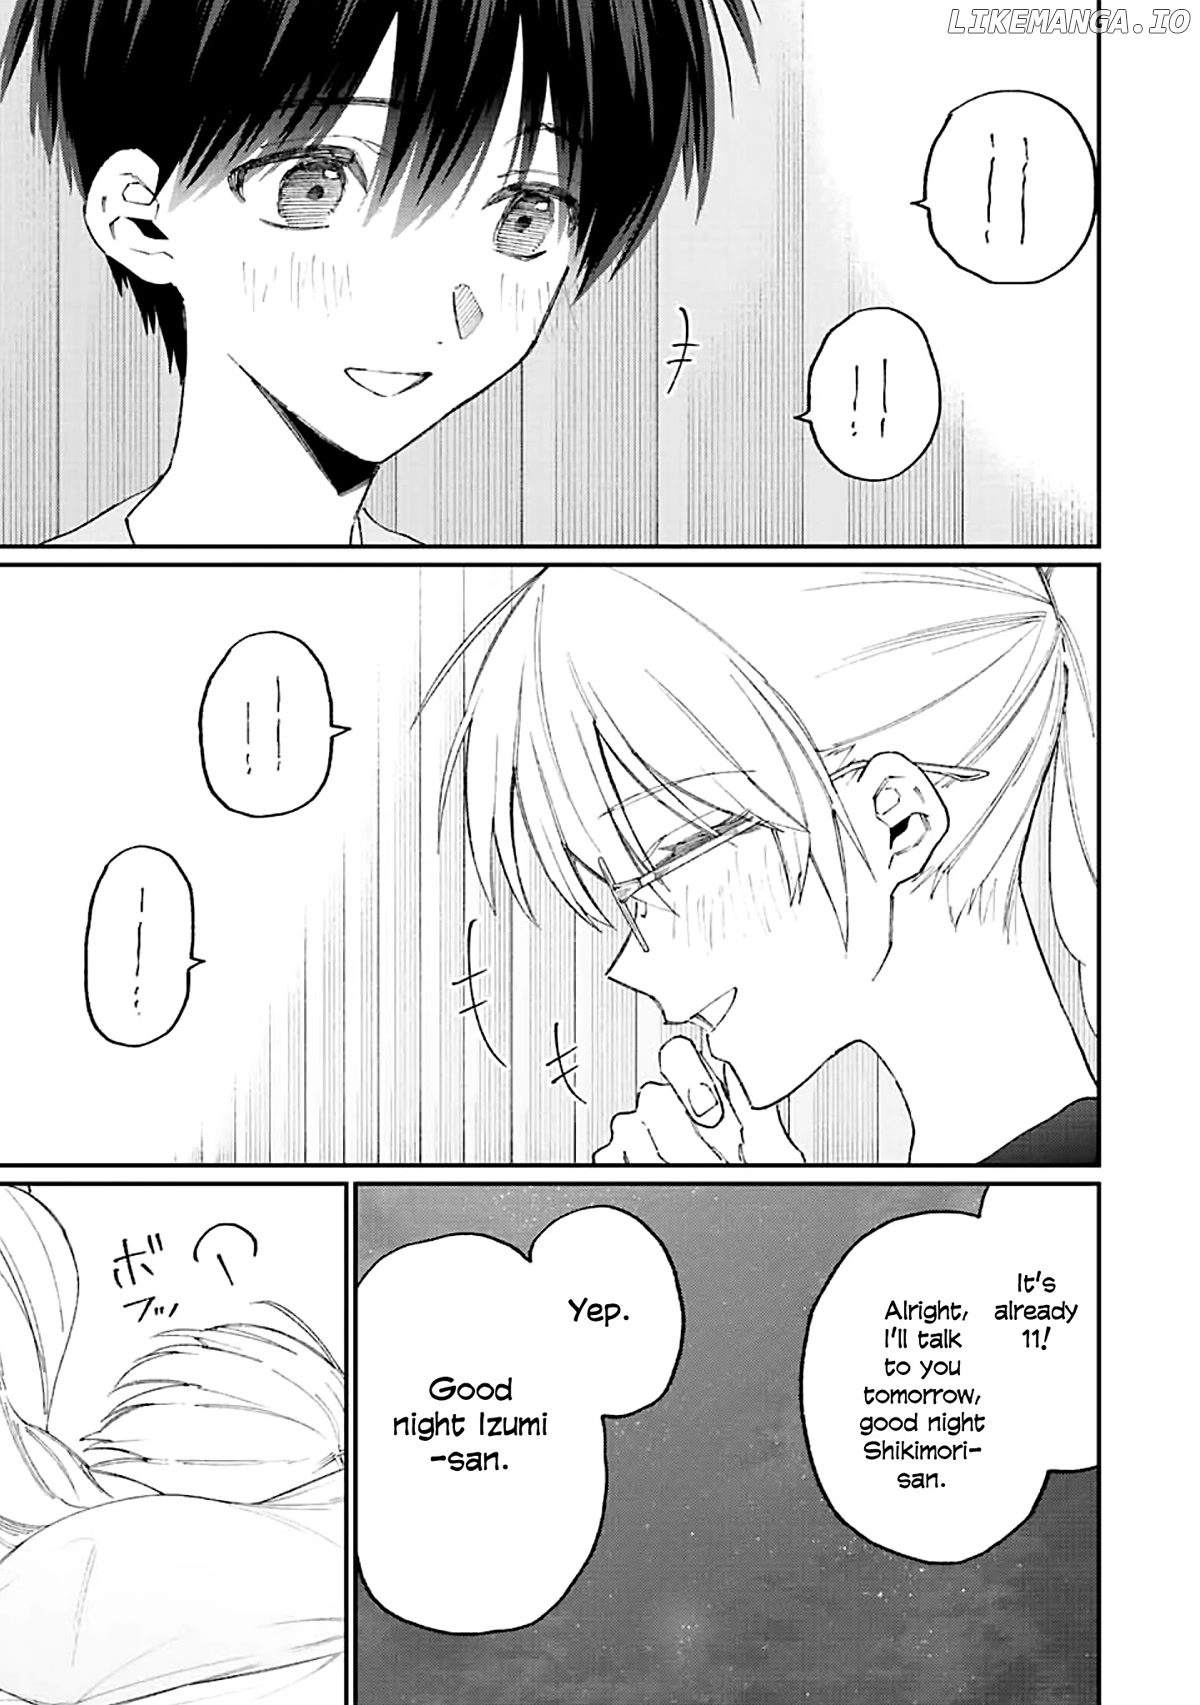 Shikimori's Not Just A Cutie chapter 158 - page 10